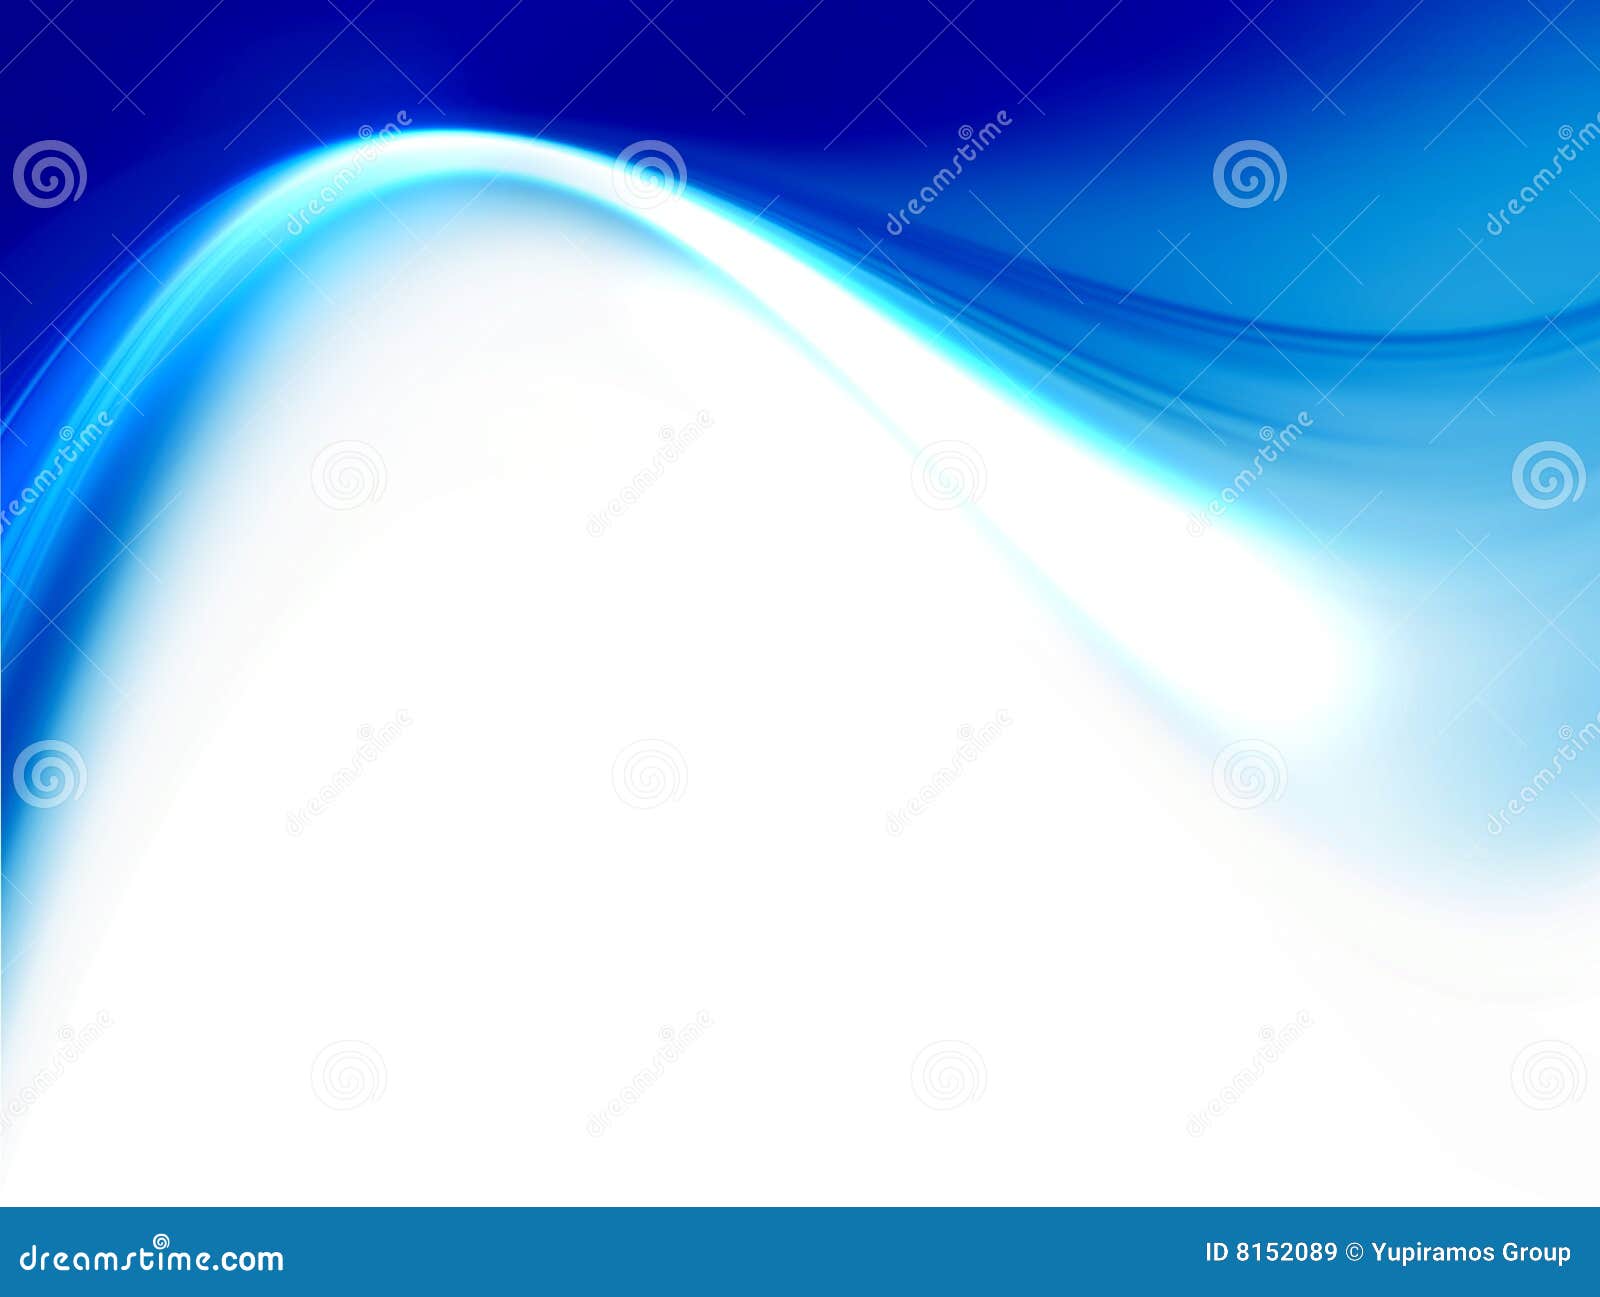 Blue wave background stock illustration. Illustration of design - 8152089